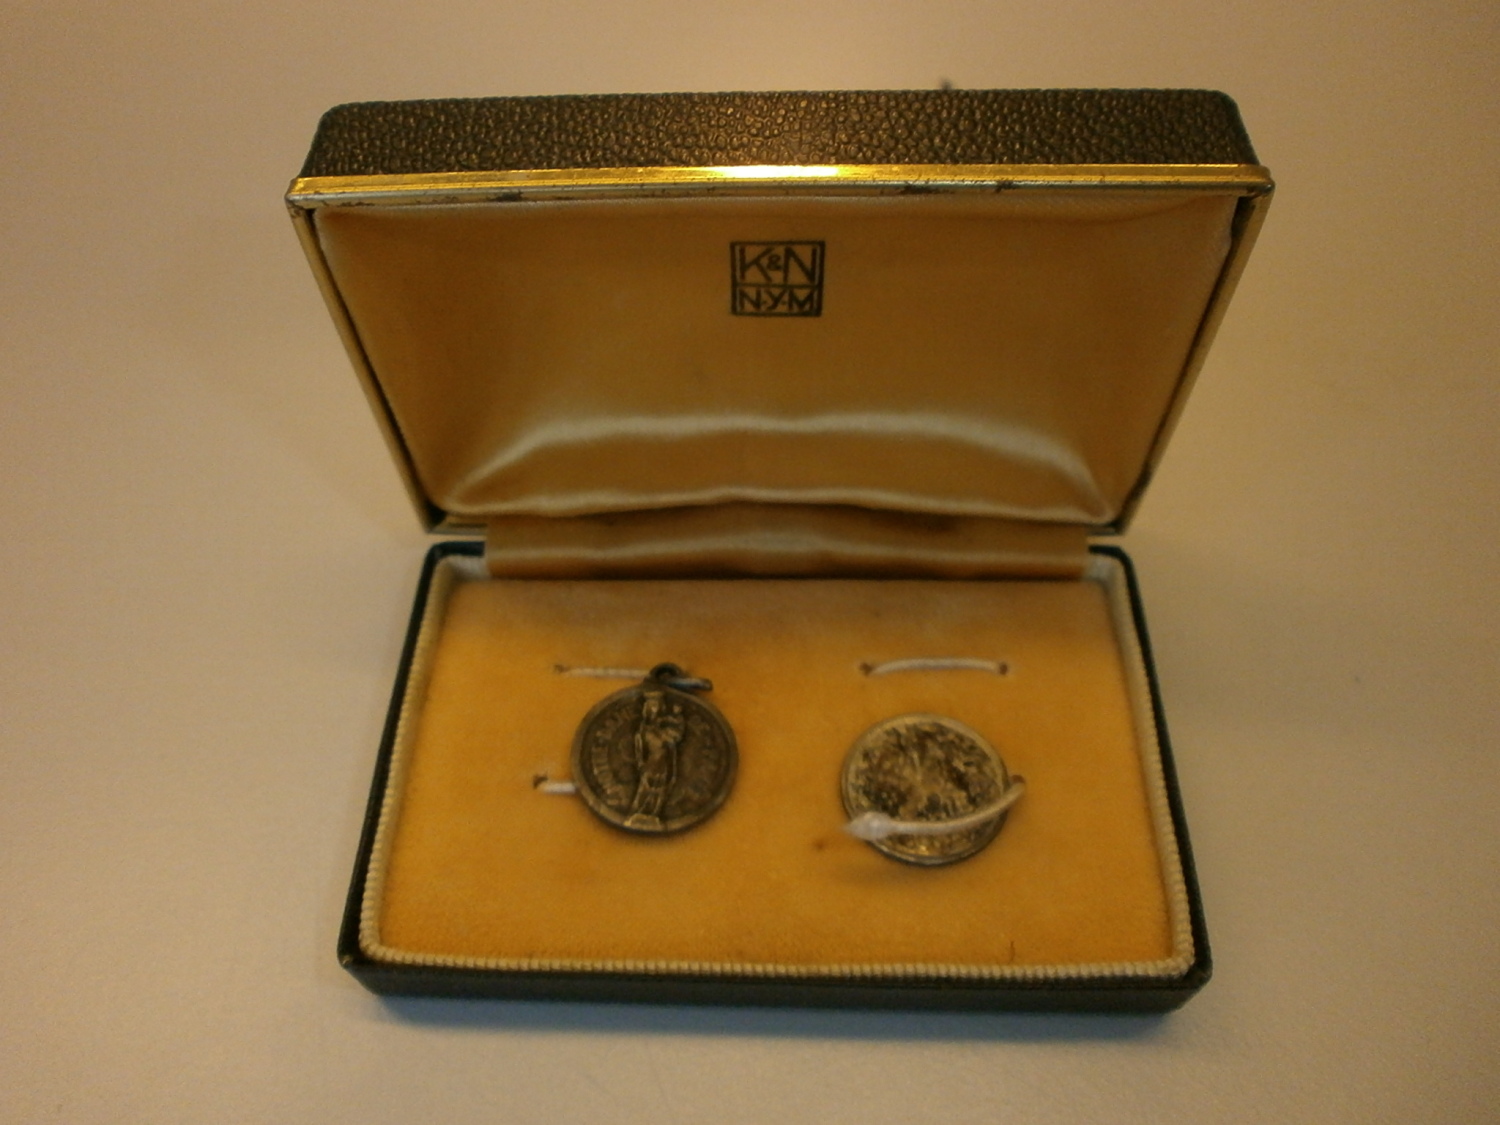 Zwei Silber-Münzen (Inhalt des schwarzen Schmuckkästchens)